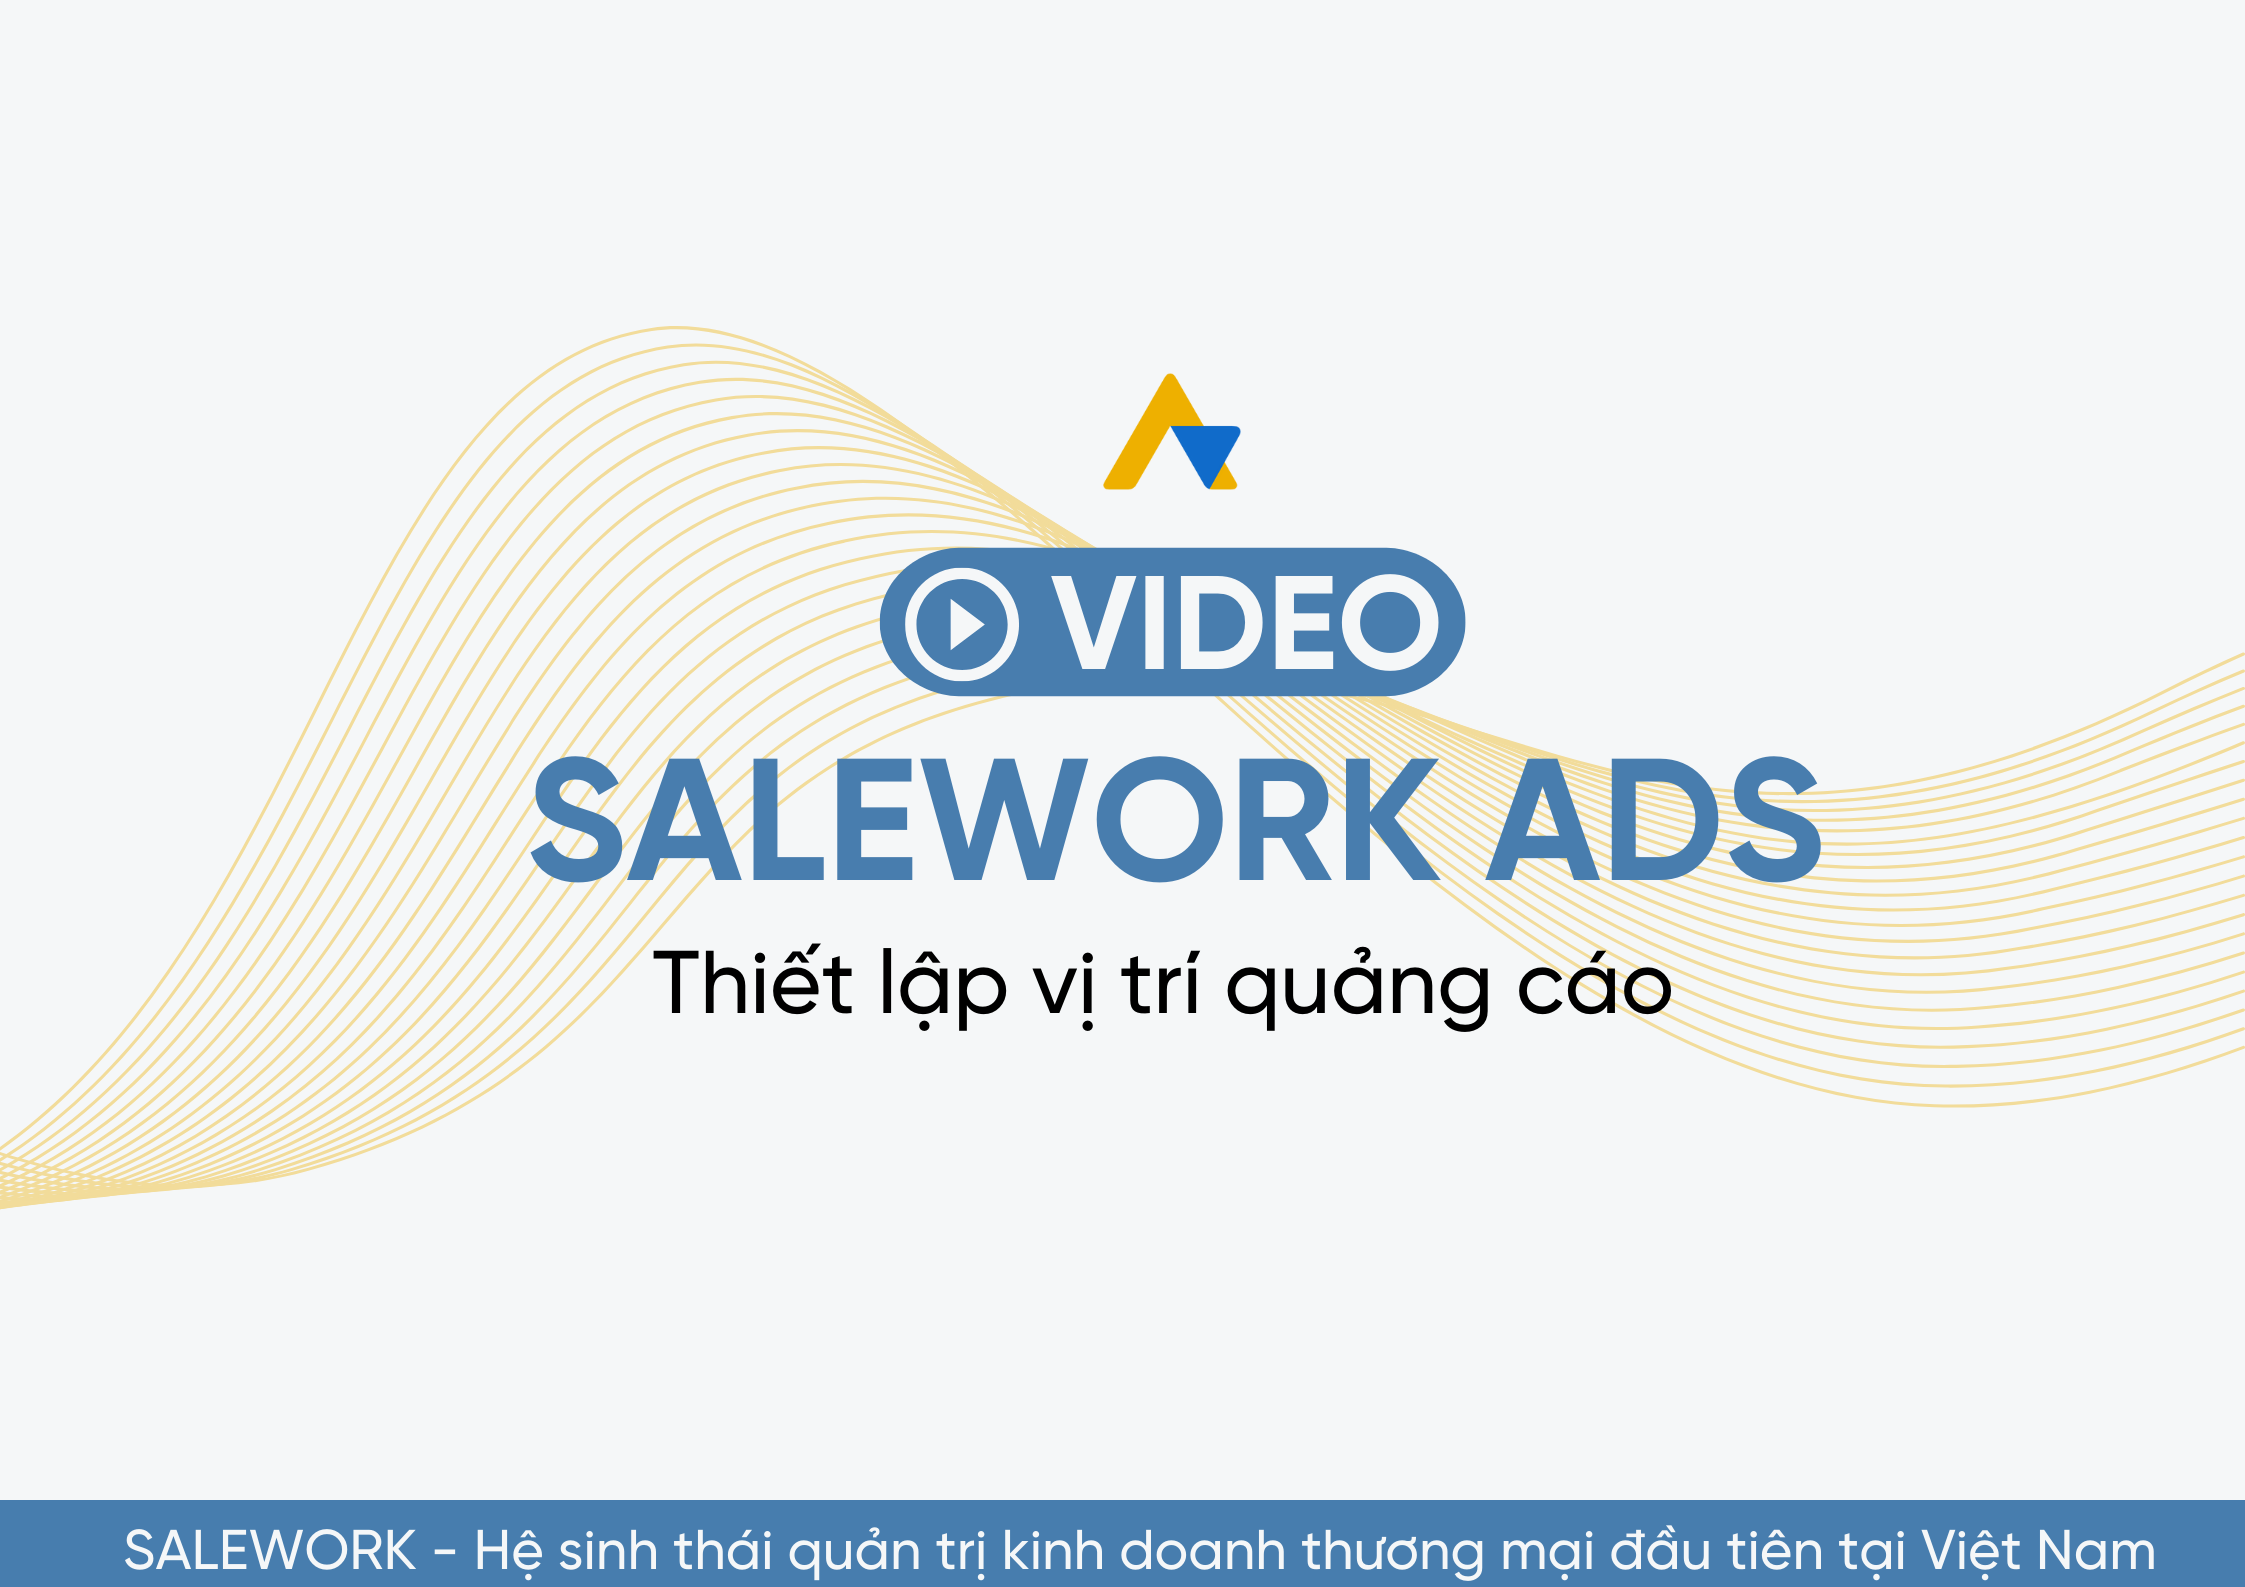 [VIDEO] Thiết lập vị trí quảng cáo tại Salework Ads - 11